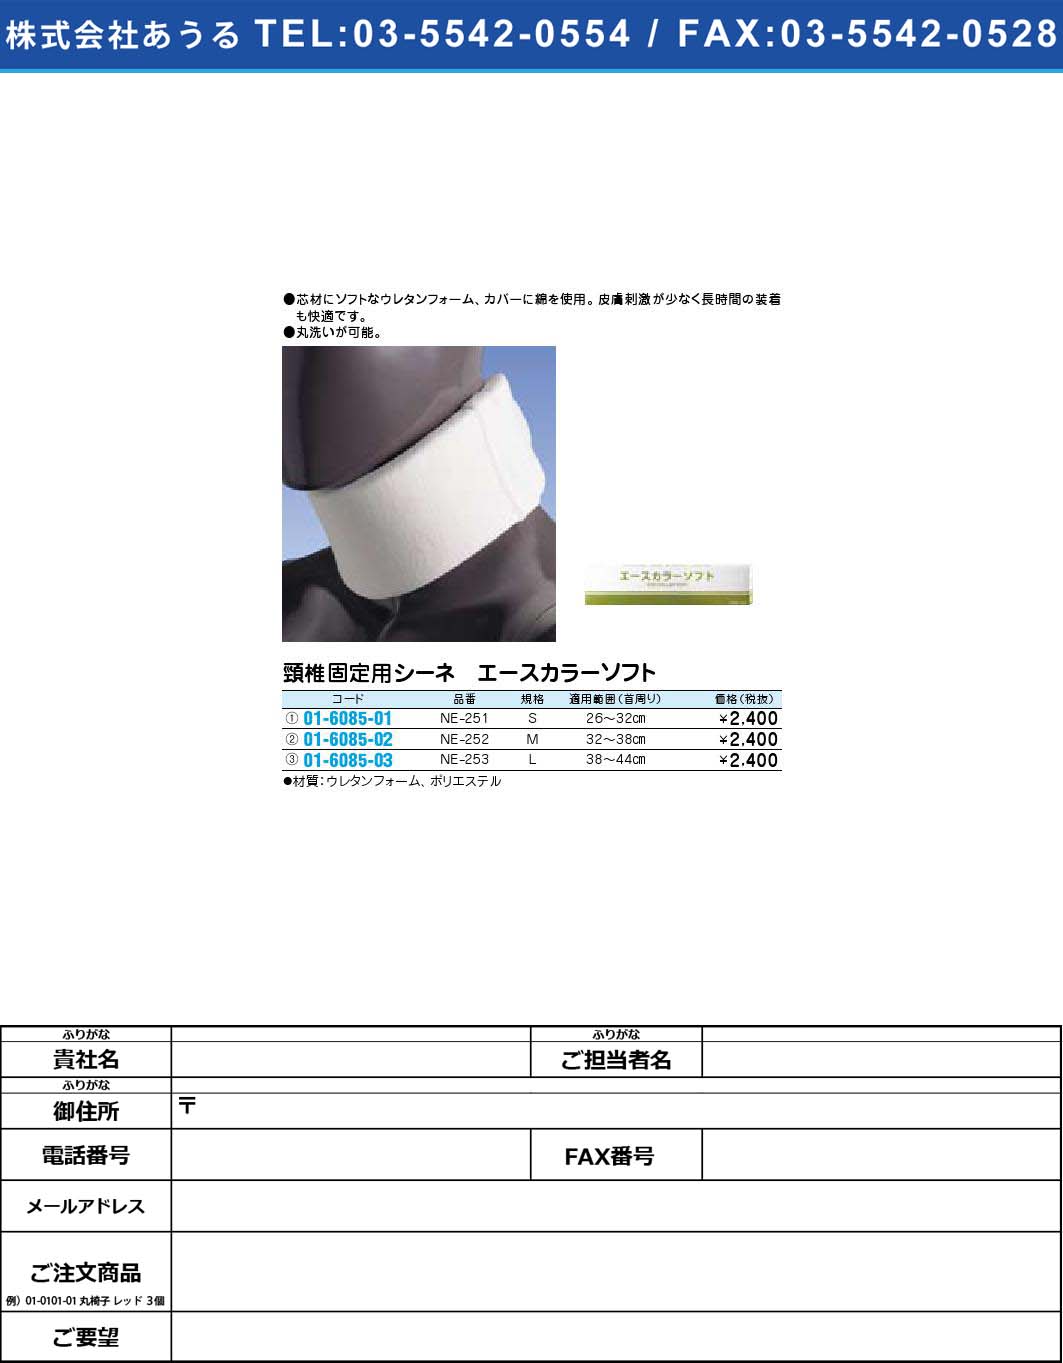 頸椎固定用シーネ エースカラーソフト NE-253【1単位】(01-6085-03)